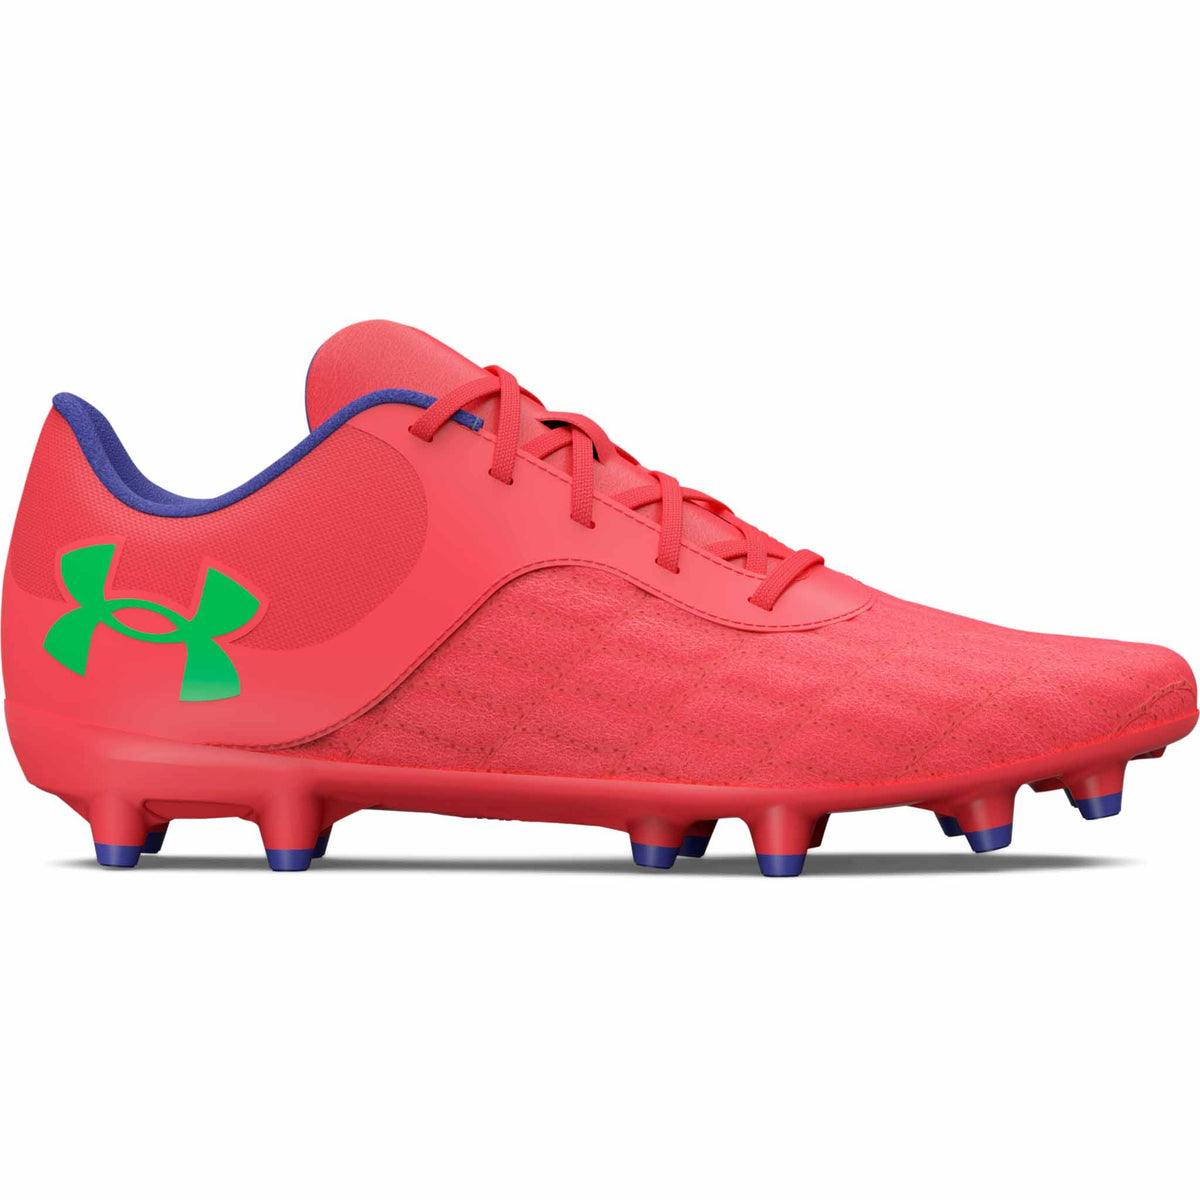 Under Armour Magnetico Select JR 3.0 FG souliers de soccer enfants -Beta / Vert / Marron